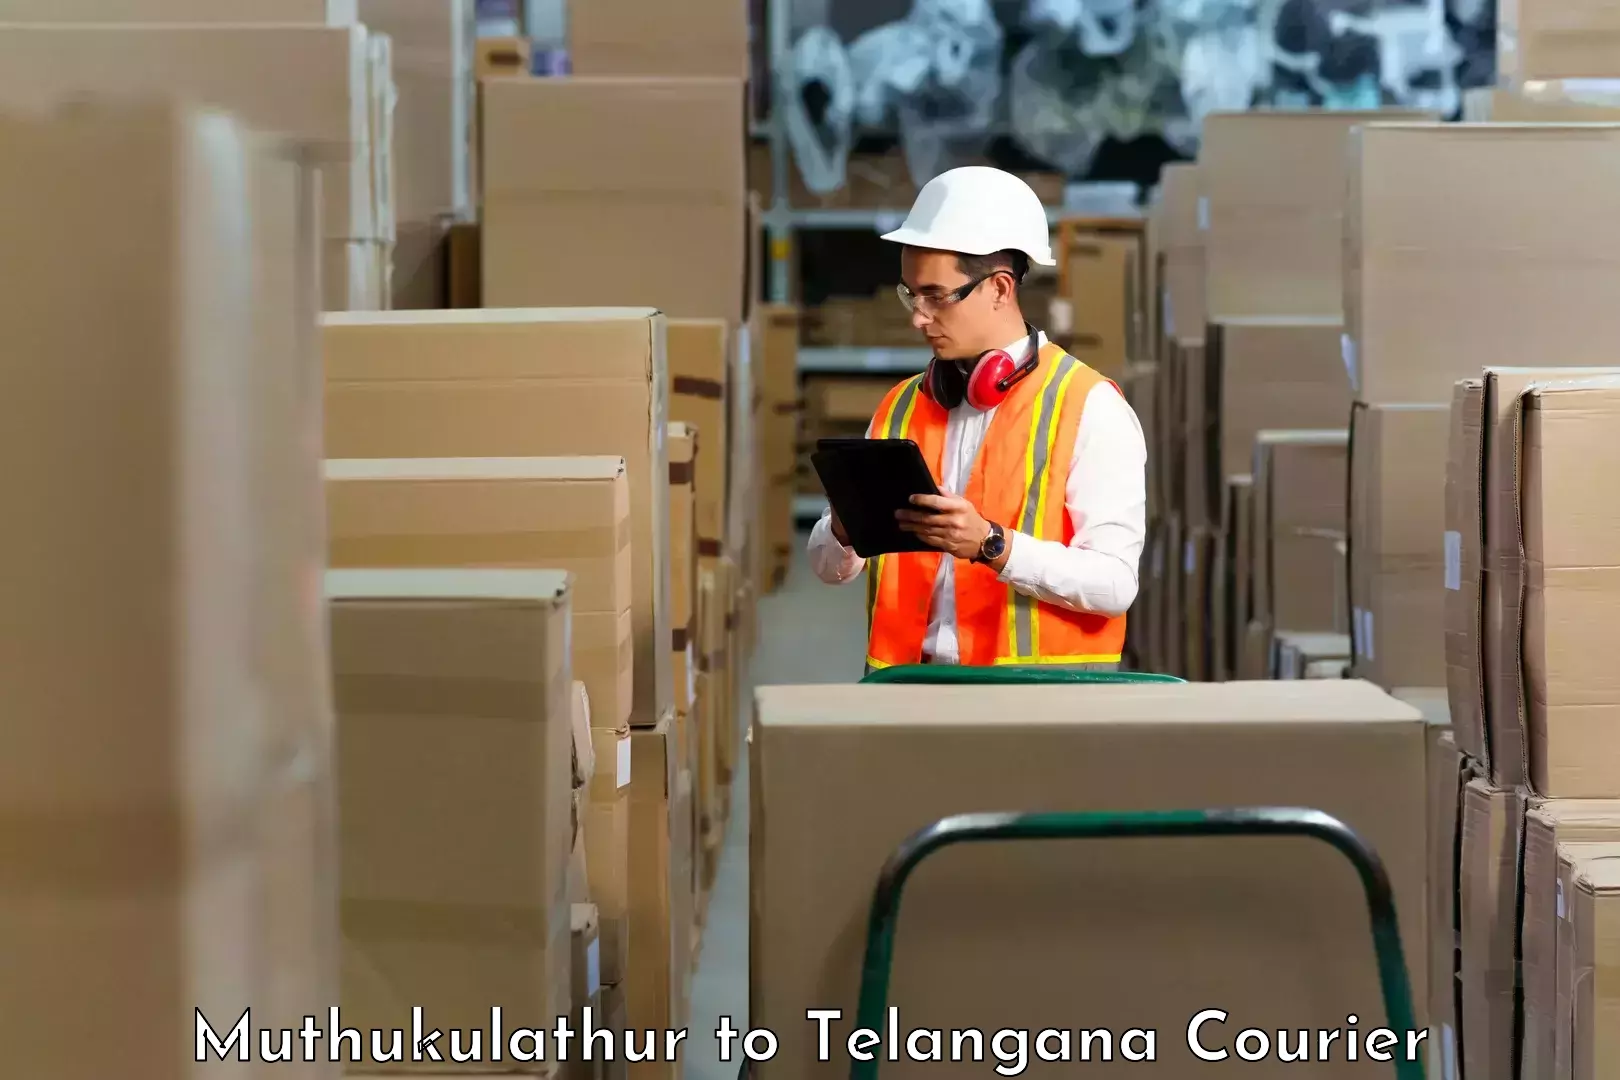 Quality courier partnerships in Muthukulathur to Nalgonda